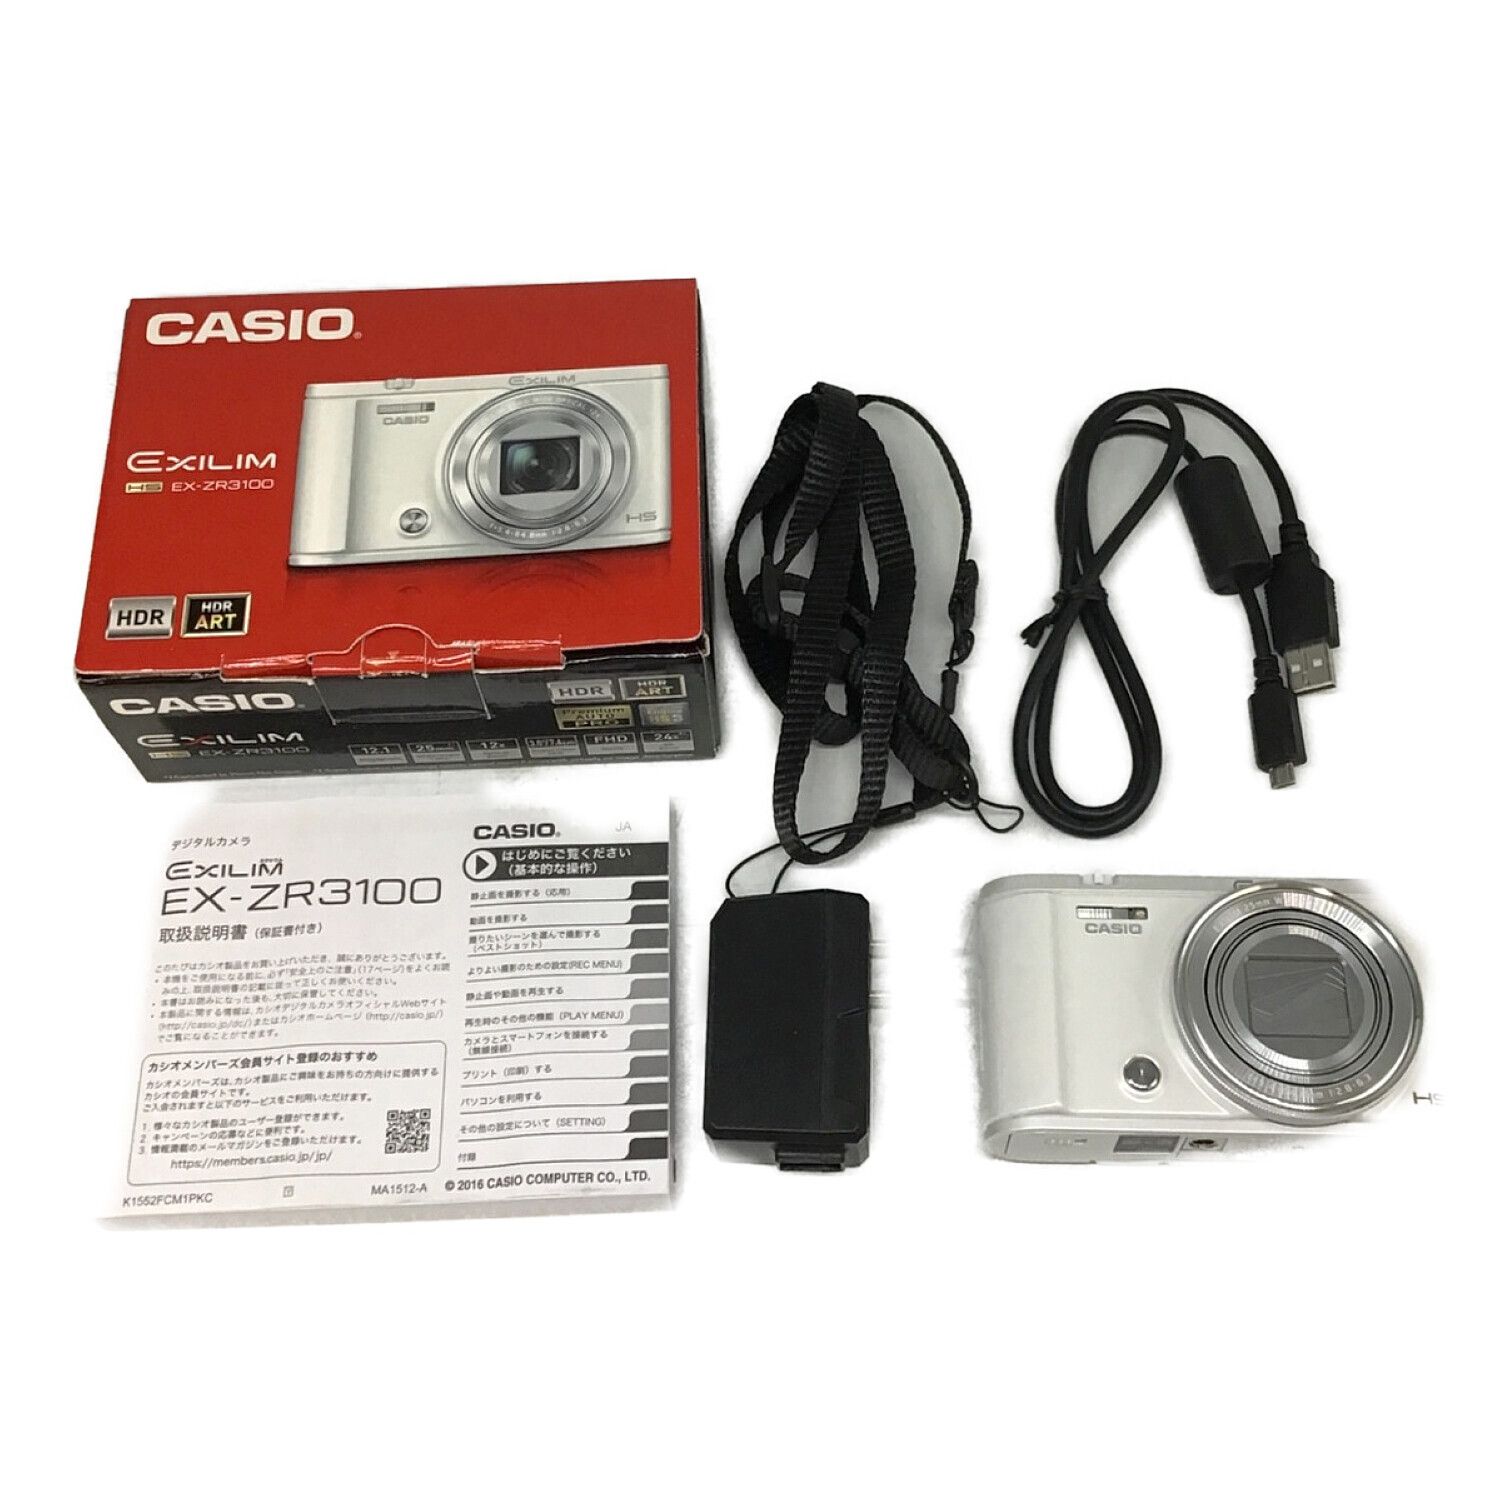 CASIO コンパクトデジタルカメラ EXILIM EX-ZR3100